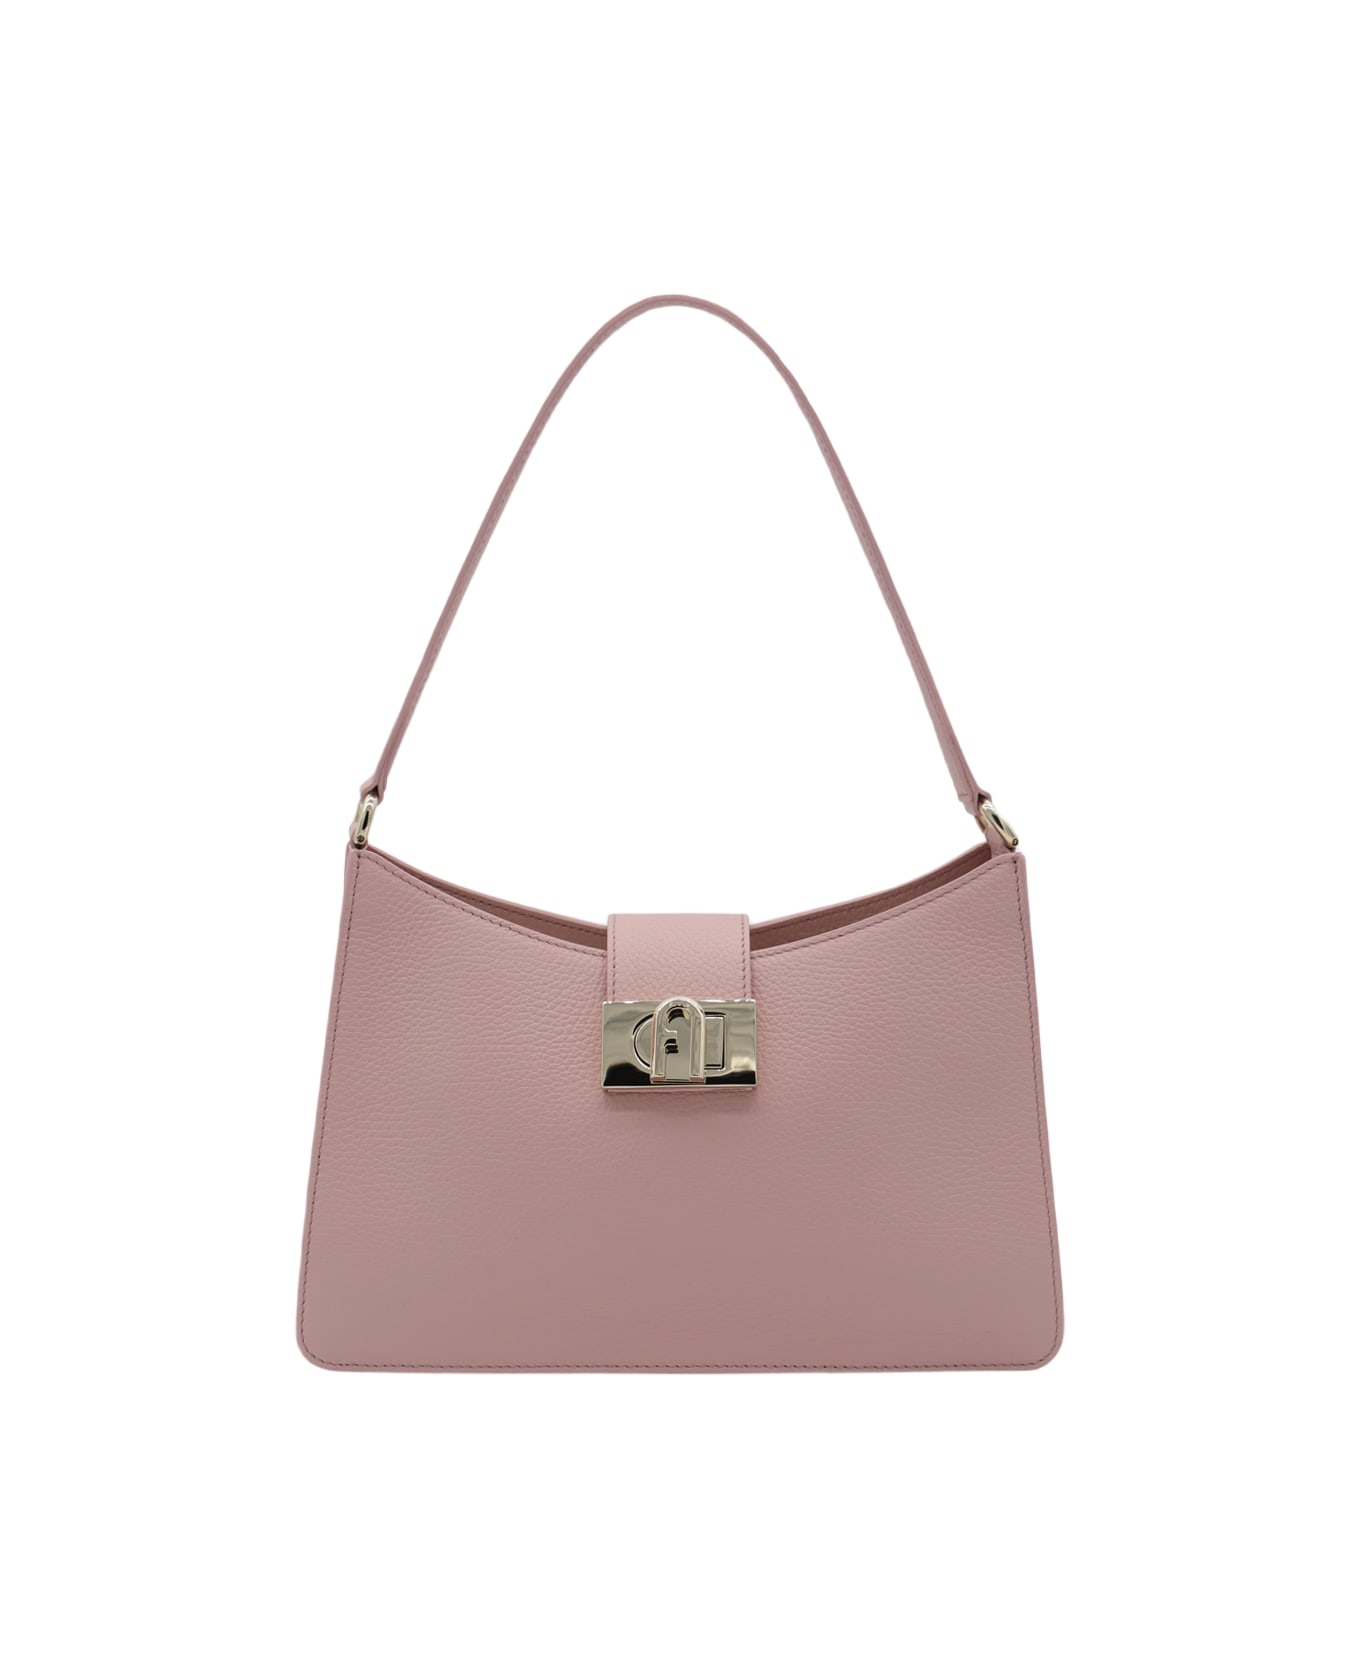 Furla Pink Leather 1927 M Shoulder Bag - ALBA トートバッグ